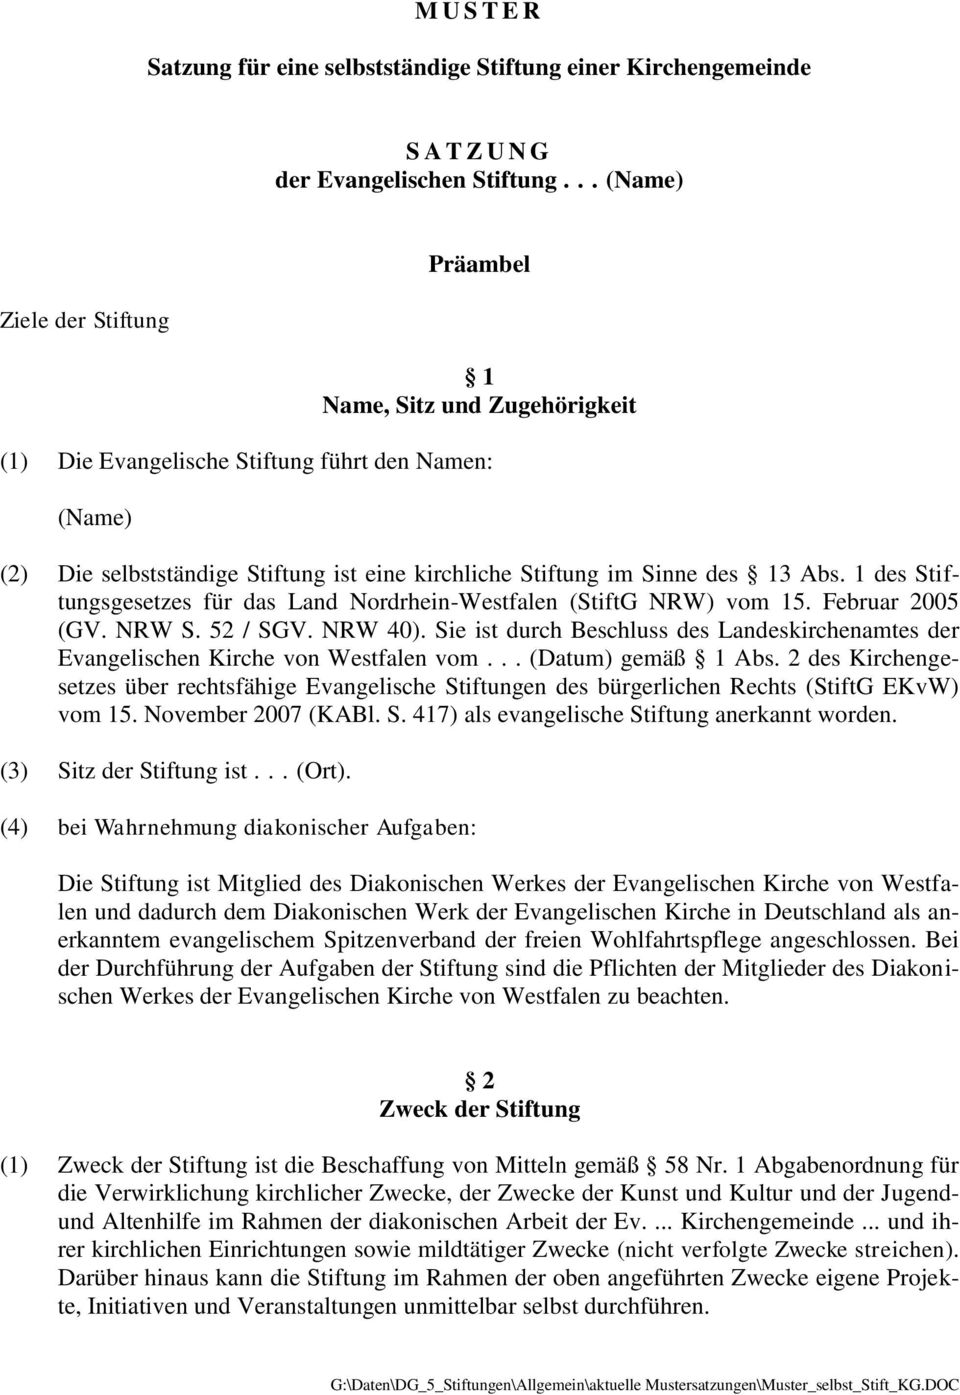 Abs. 1 des Stiftungsgesetzes für das Land Nordrhein-Westfalen (StiftG NRW) vom 15. Februar 2005 (GV. NRW S. 52 / SGV. NRW 40).